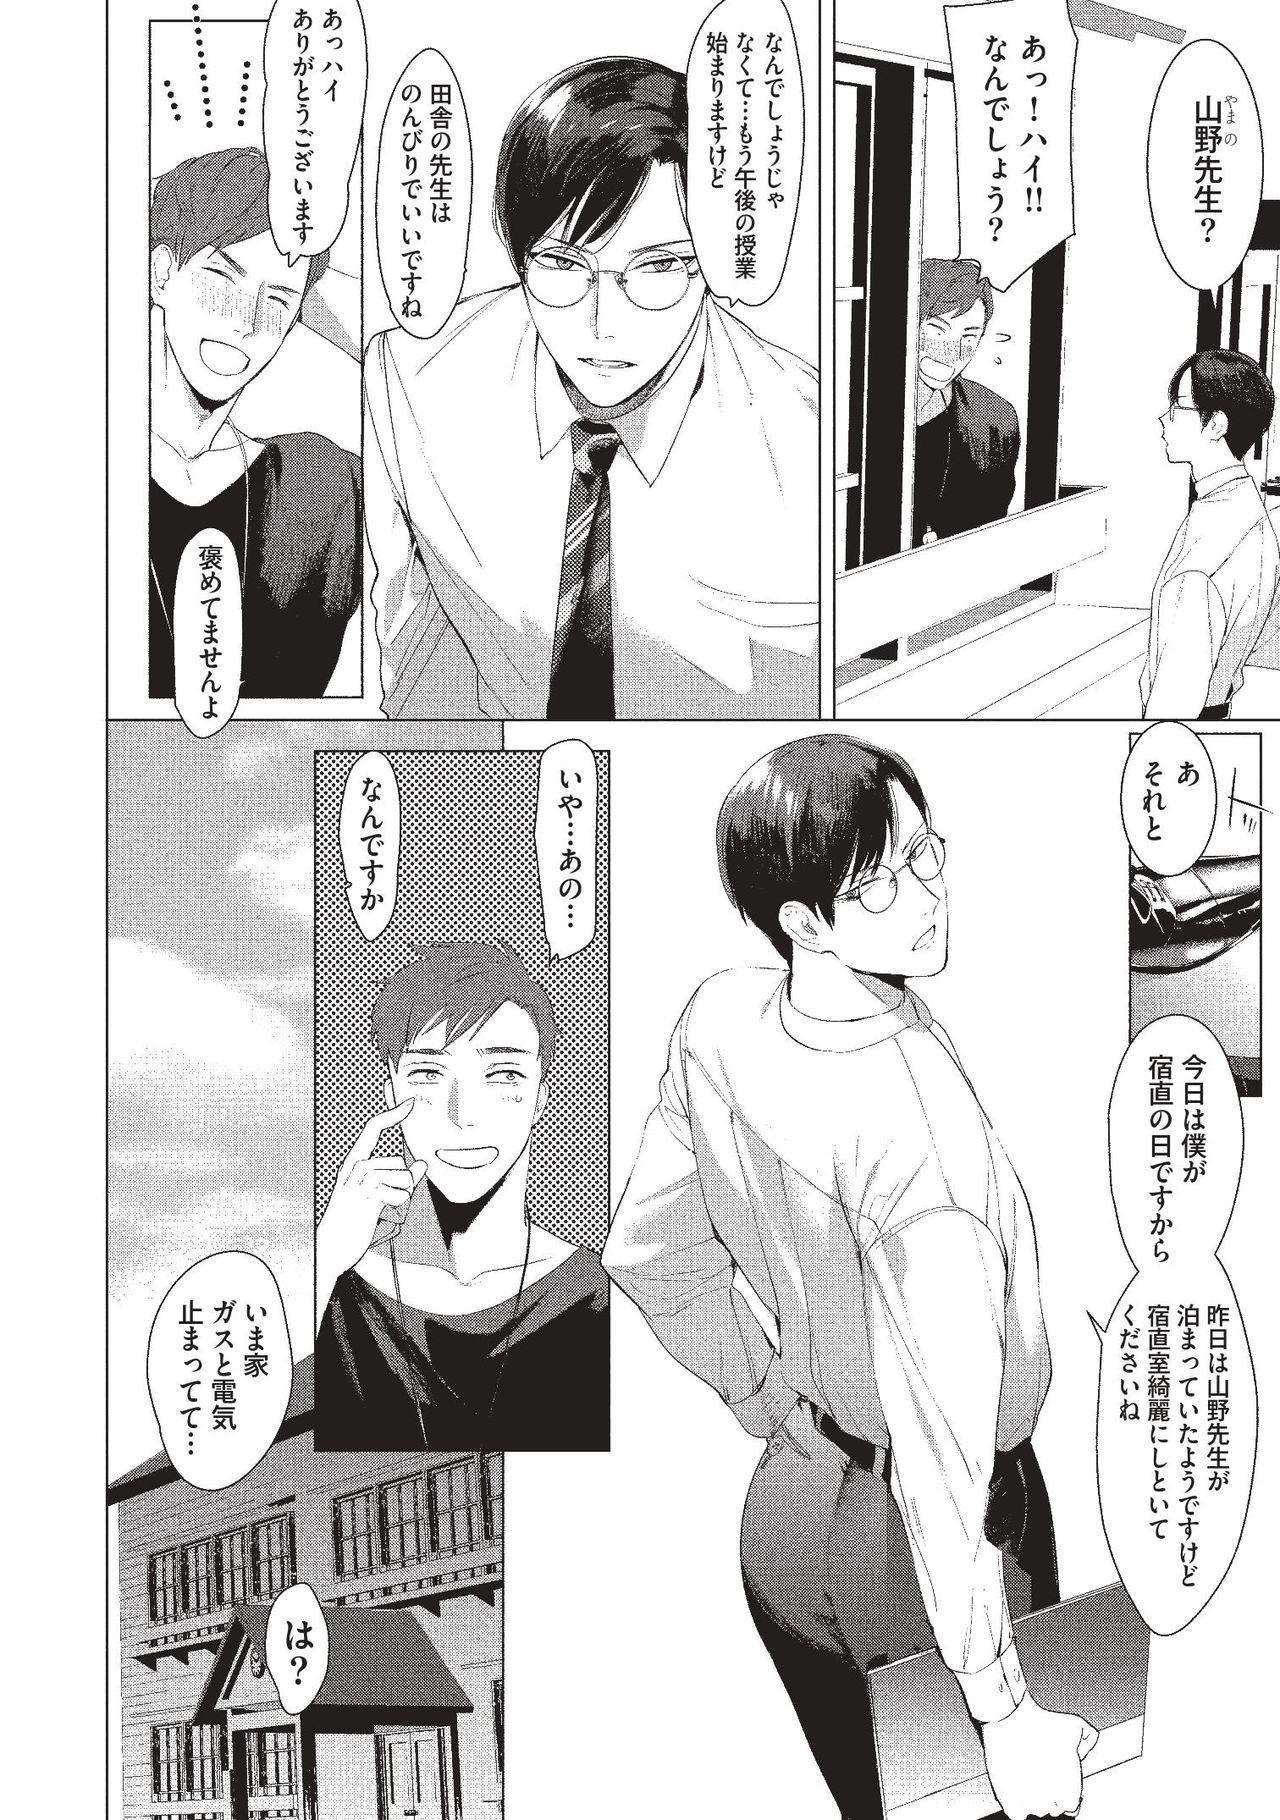 Ftvgirls Sensei wa Benki ja arimasen - Original Bunduda - Page 4